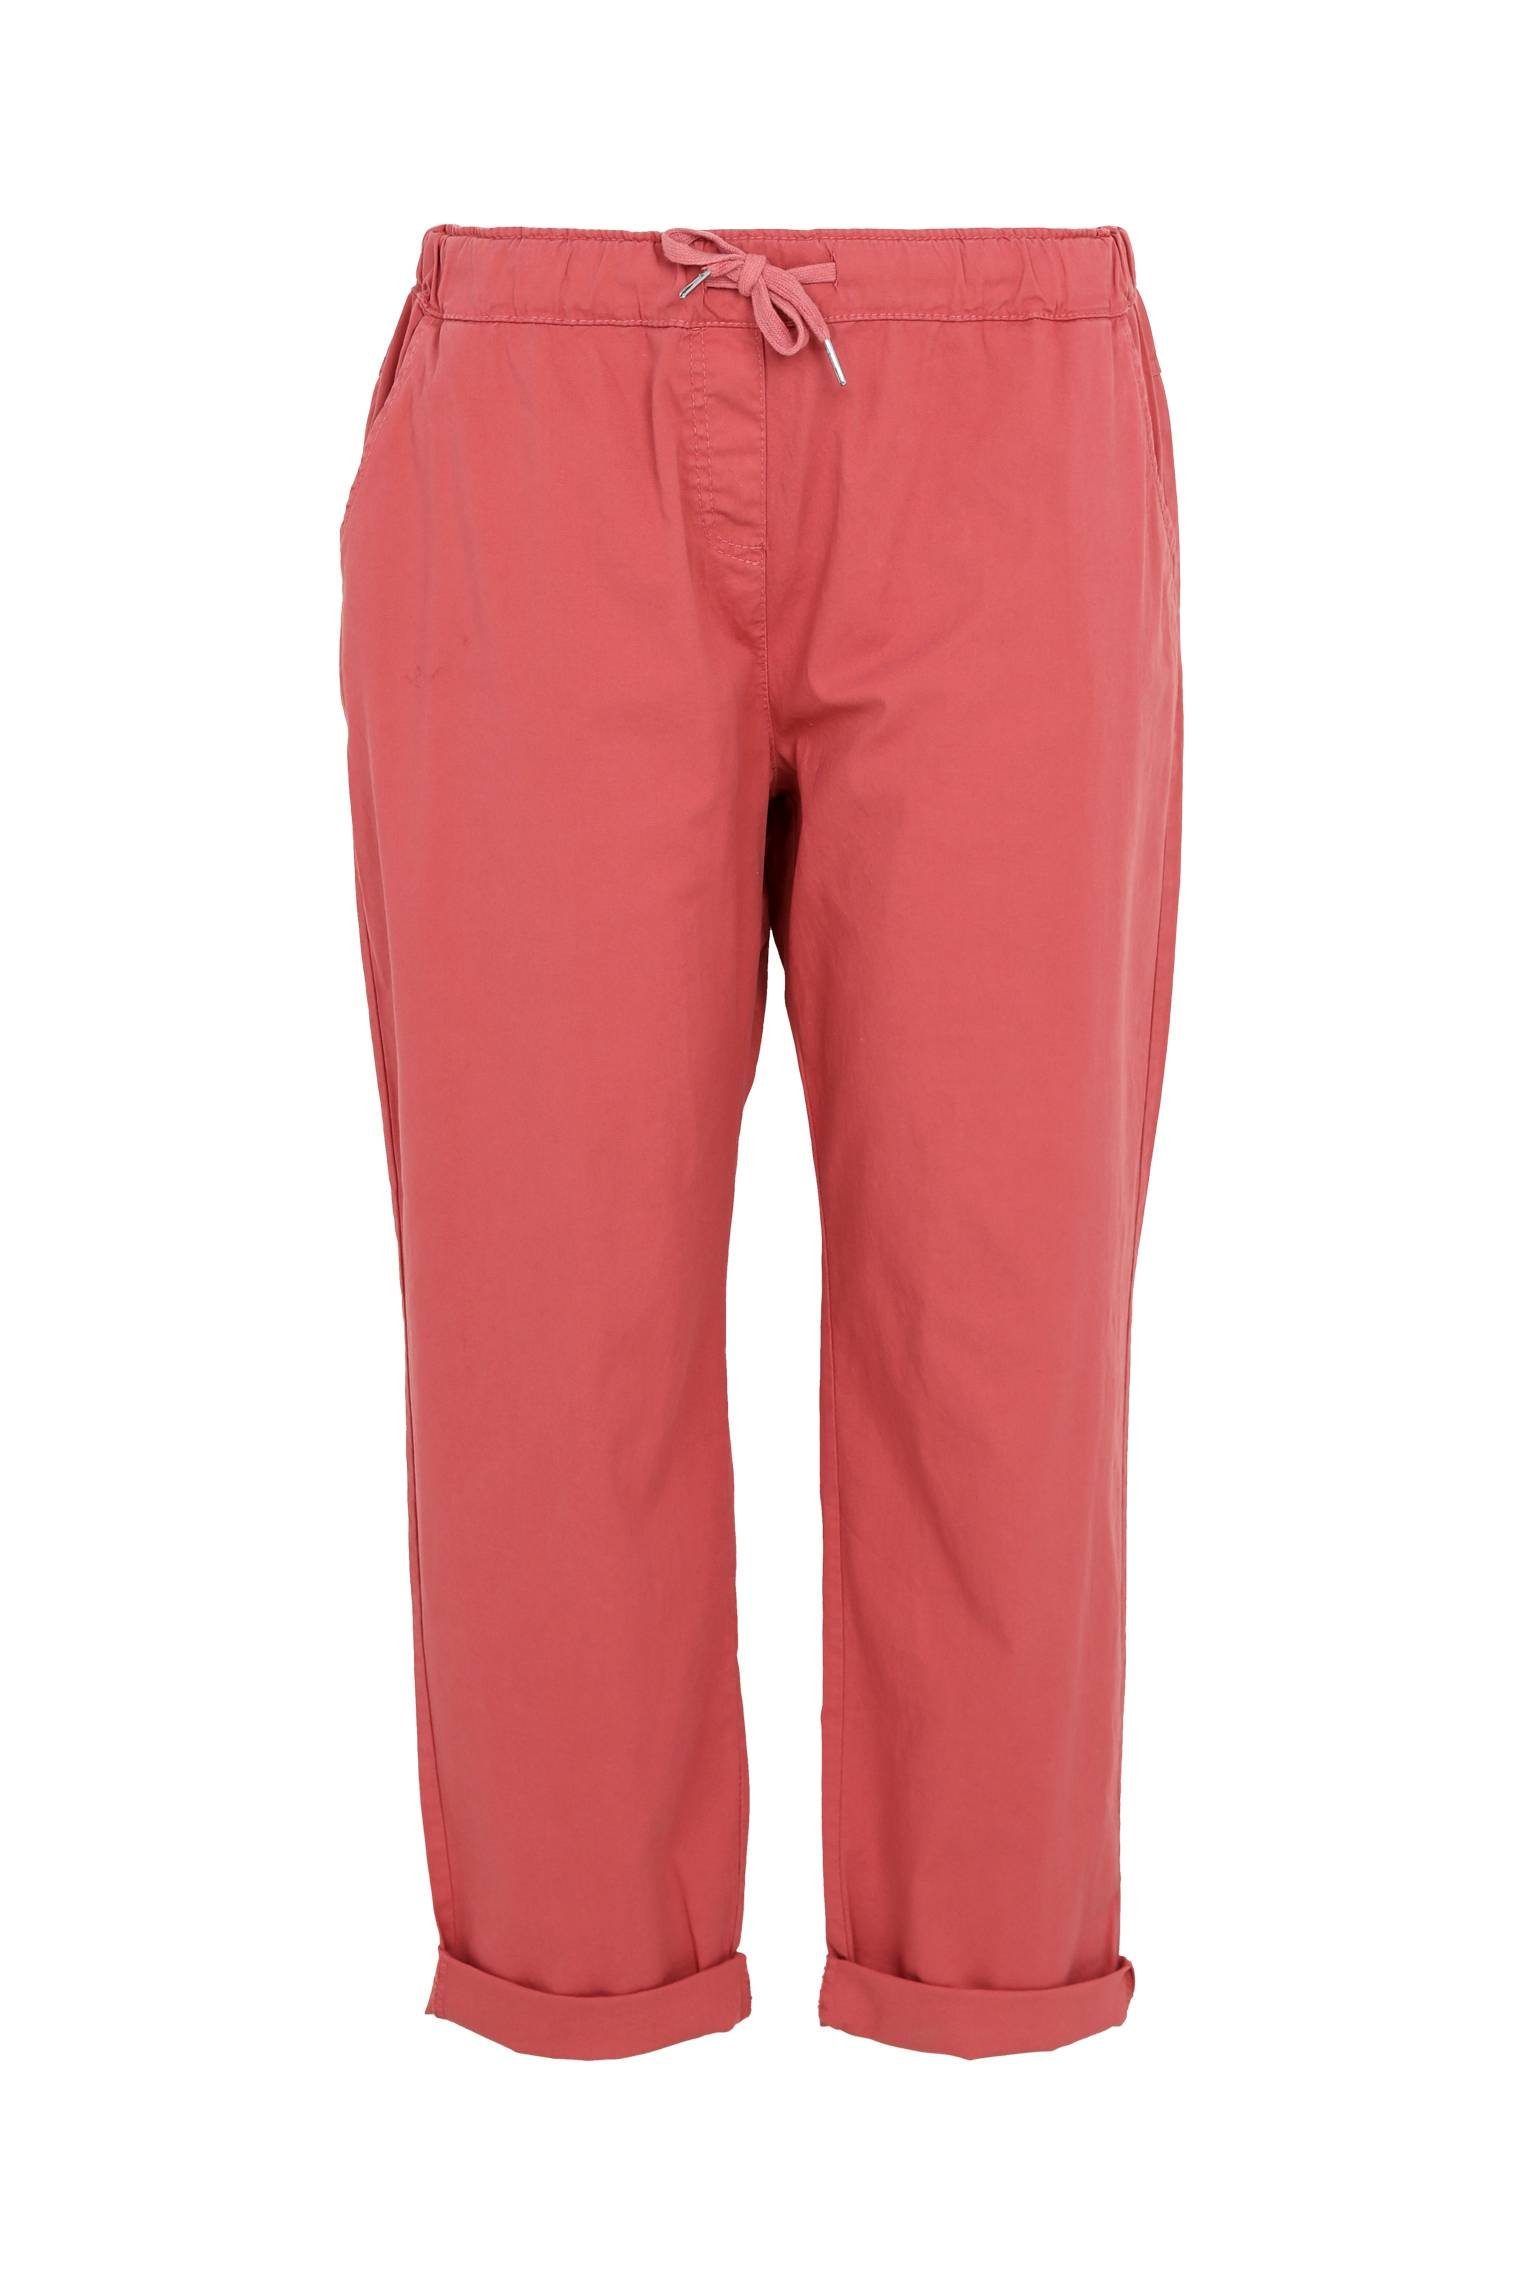 Rosa Arbeithosen für Damen kaufen » Pinke Arbeithosen | OTTO | Arbeitshosen